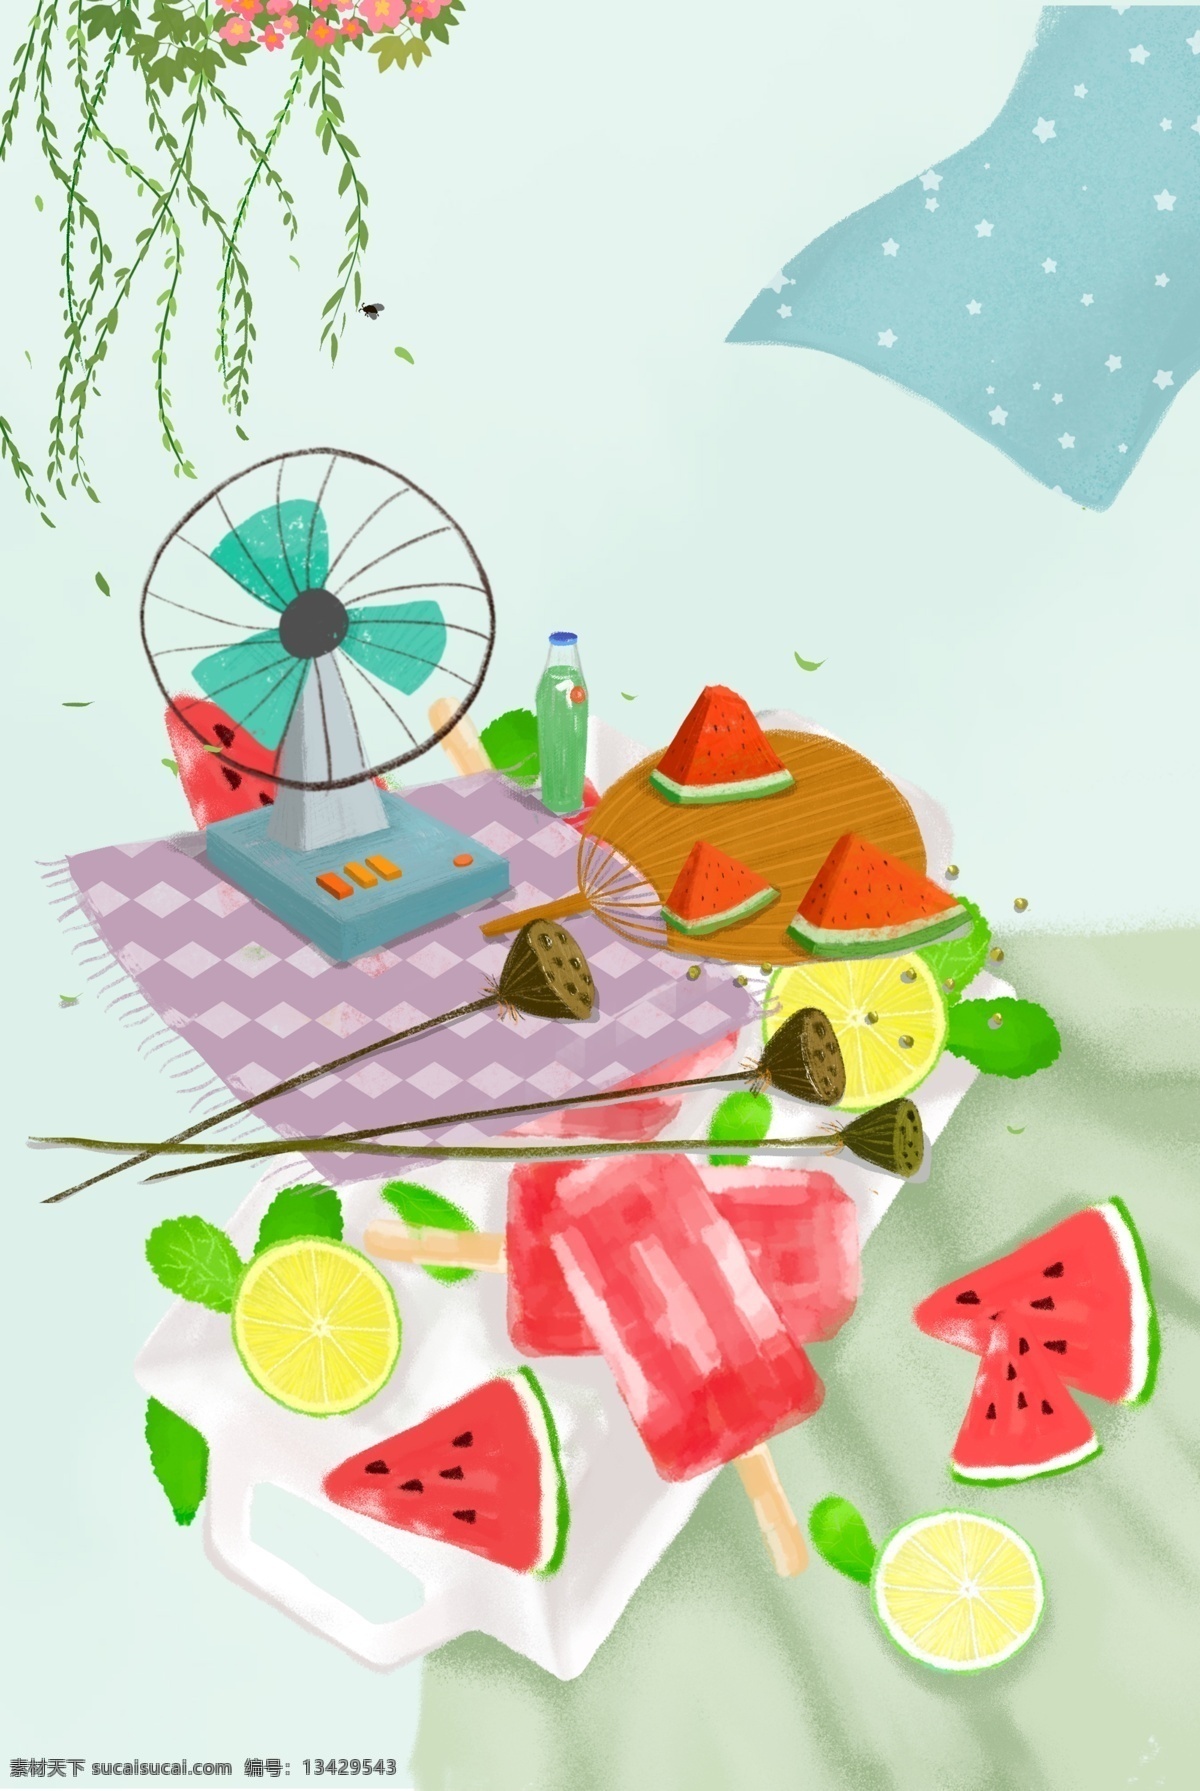 夏季 甜品 冰淇淋 背景 水果 甜品店 美味 好吃的 手绘蛋糕 甜品矢量下载 甜品矢量